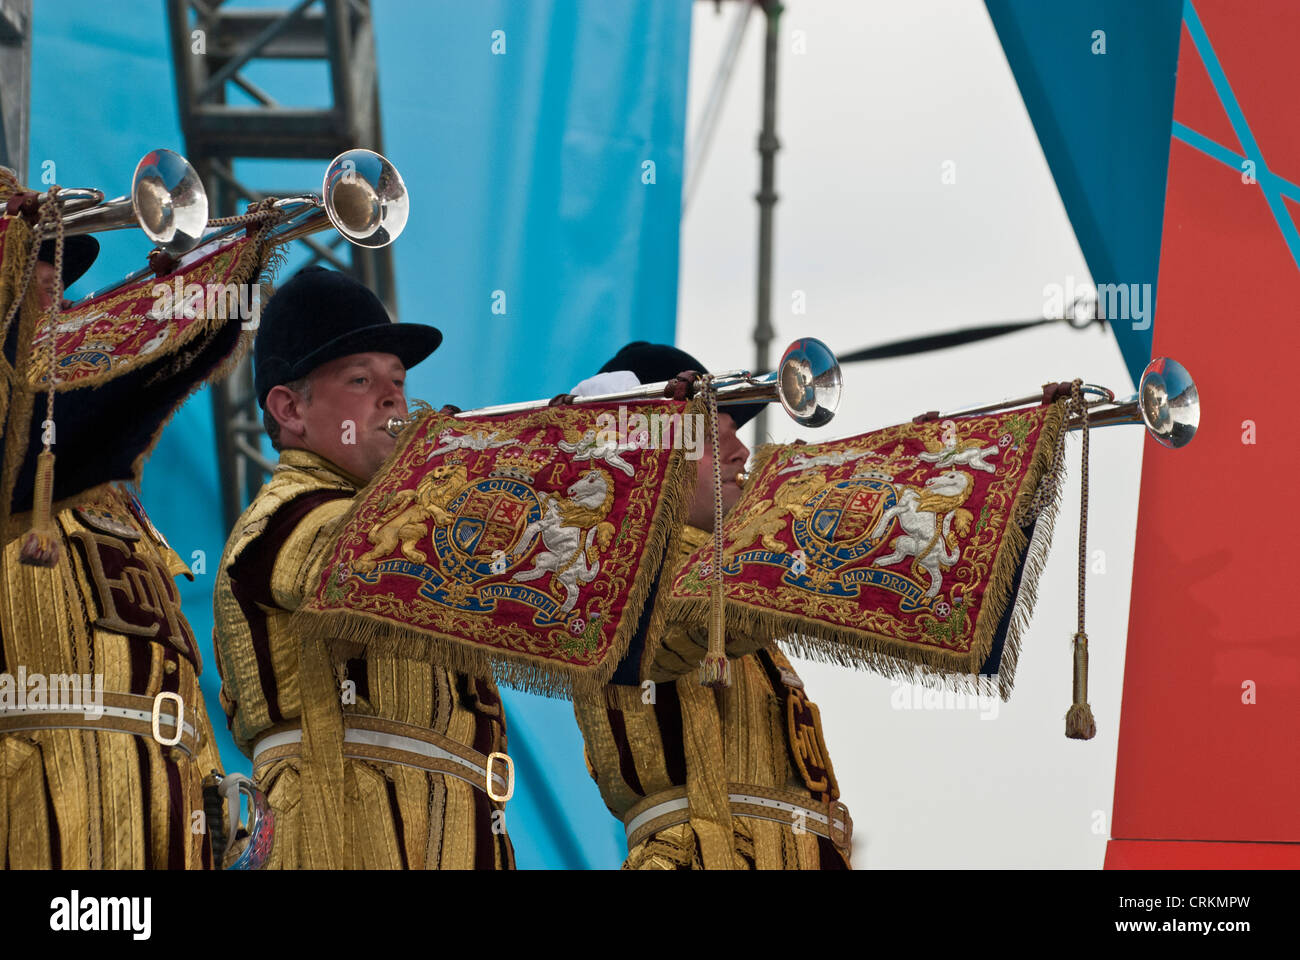 Haushalt Kavallerie Trompeter "1 Jahr vor" London 2012 Olympics Trafalgar Square Stockfoto